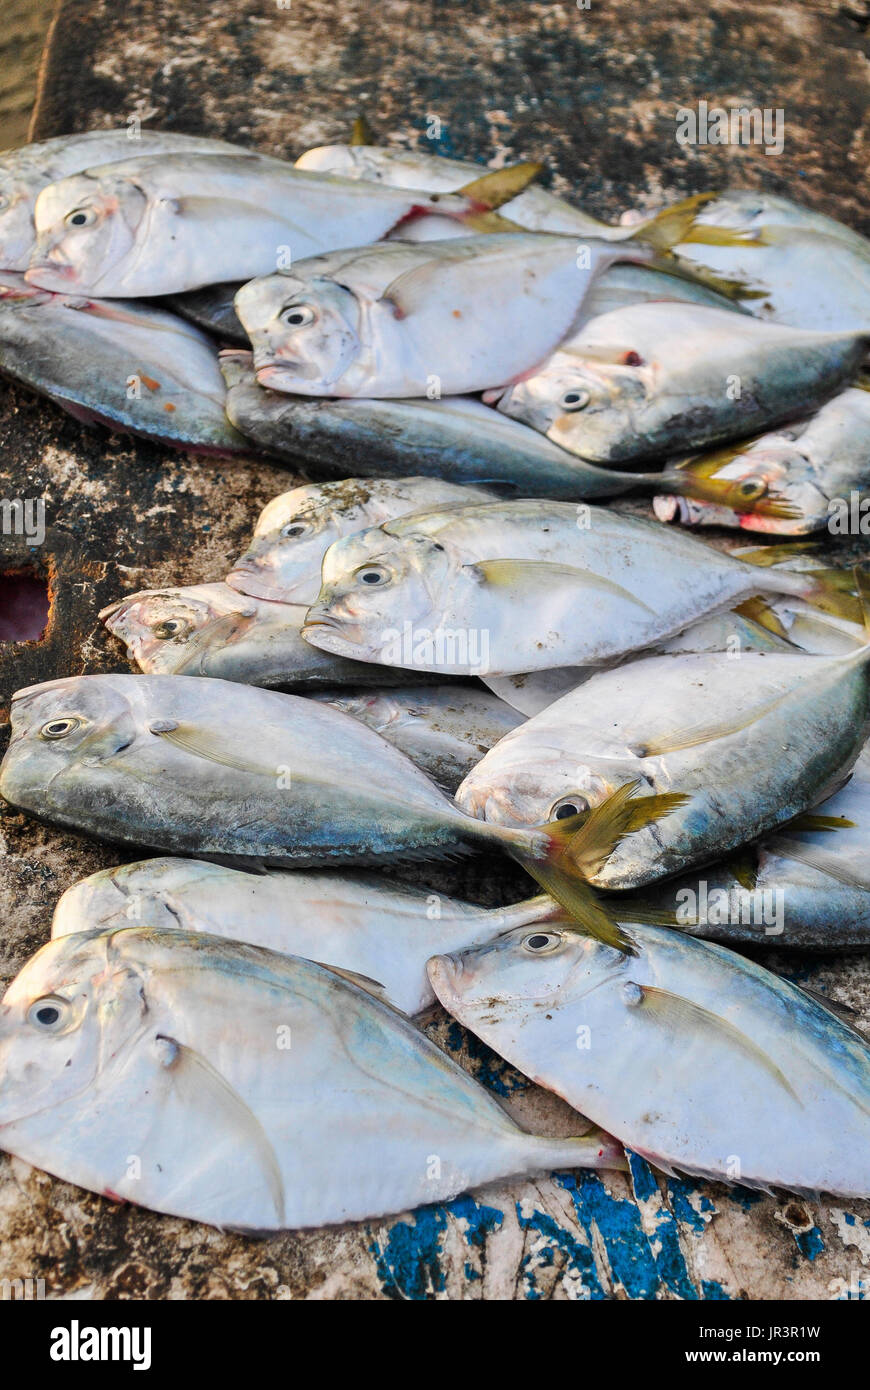 Moonfish péruvien ou Carita (Selene peruviana) dans le marché aux poissons. Manta. L'Équateur. Banque D'Images